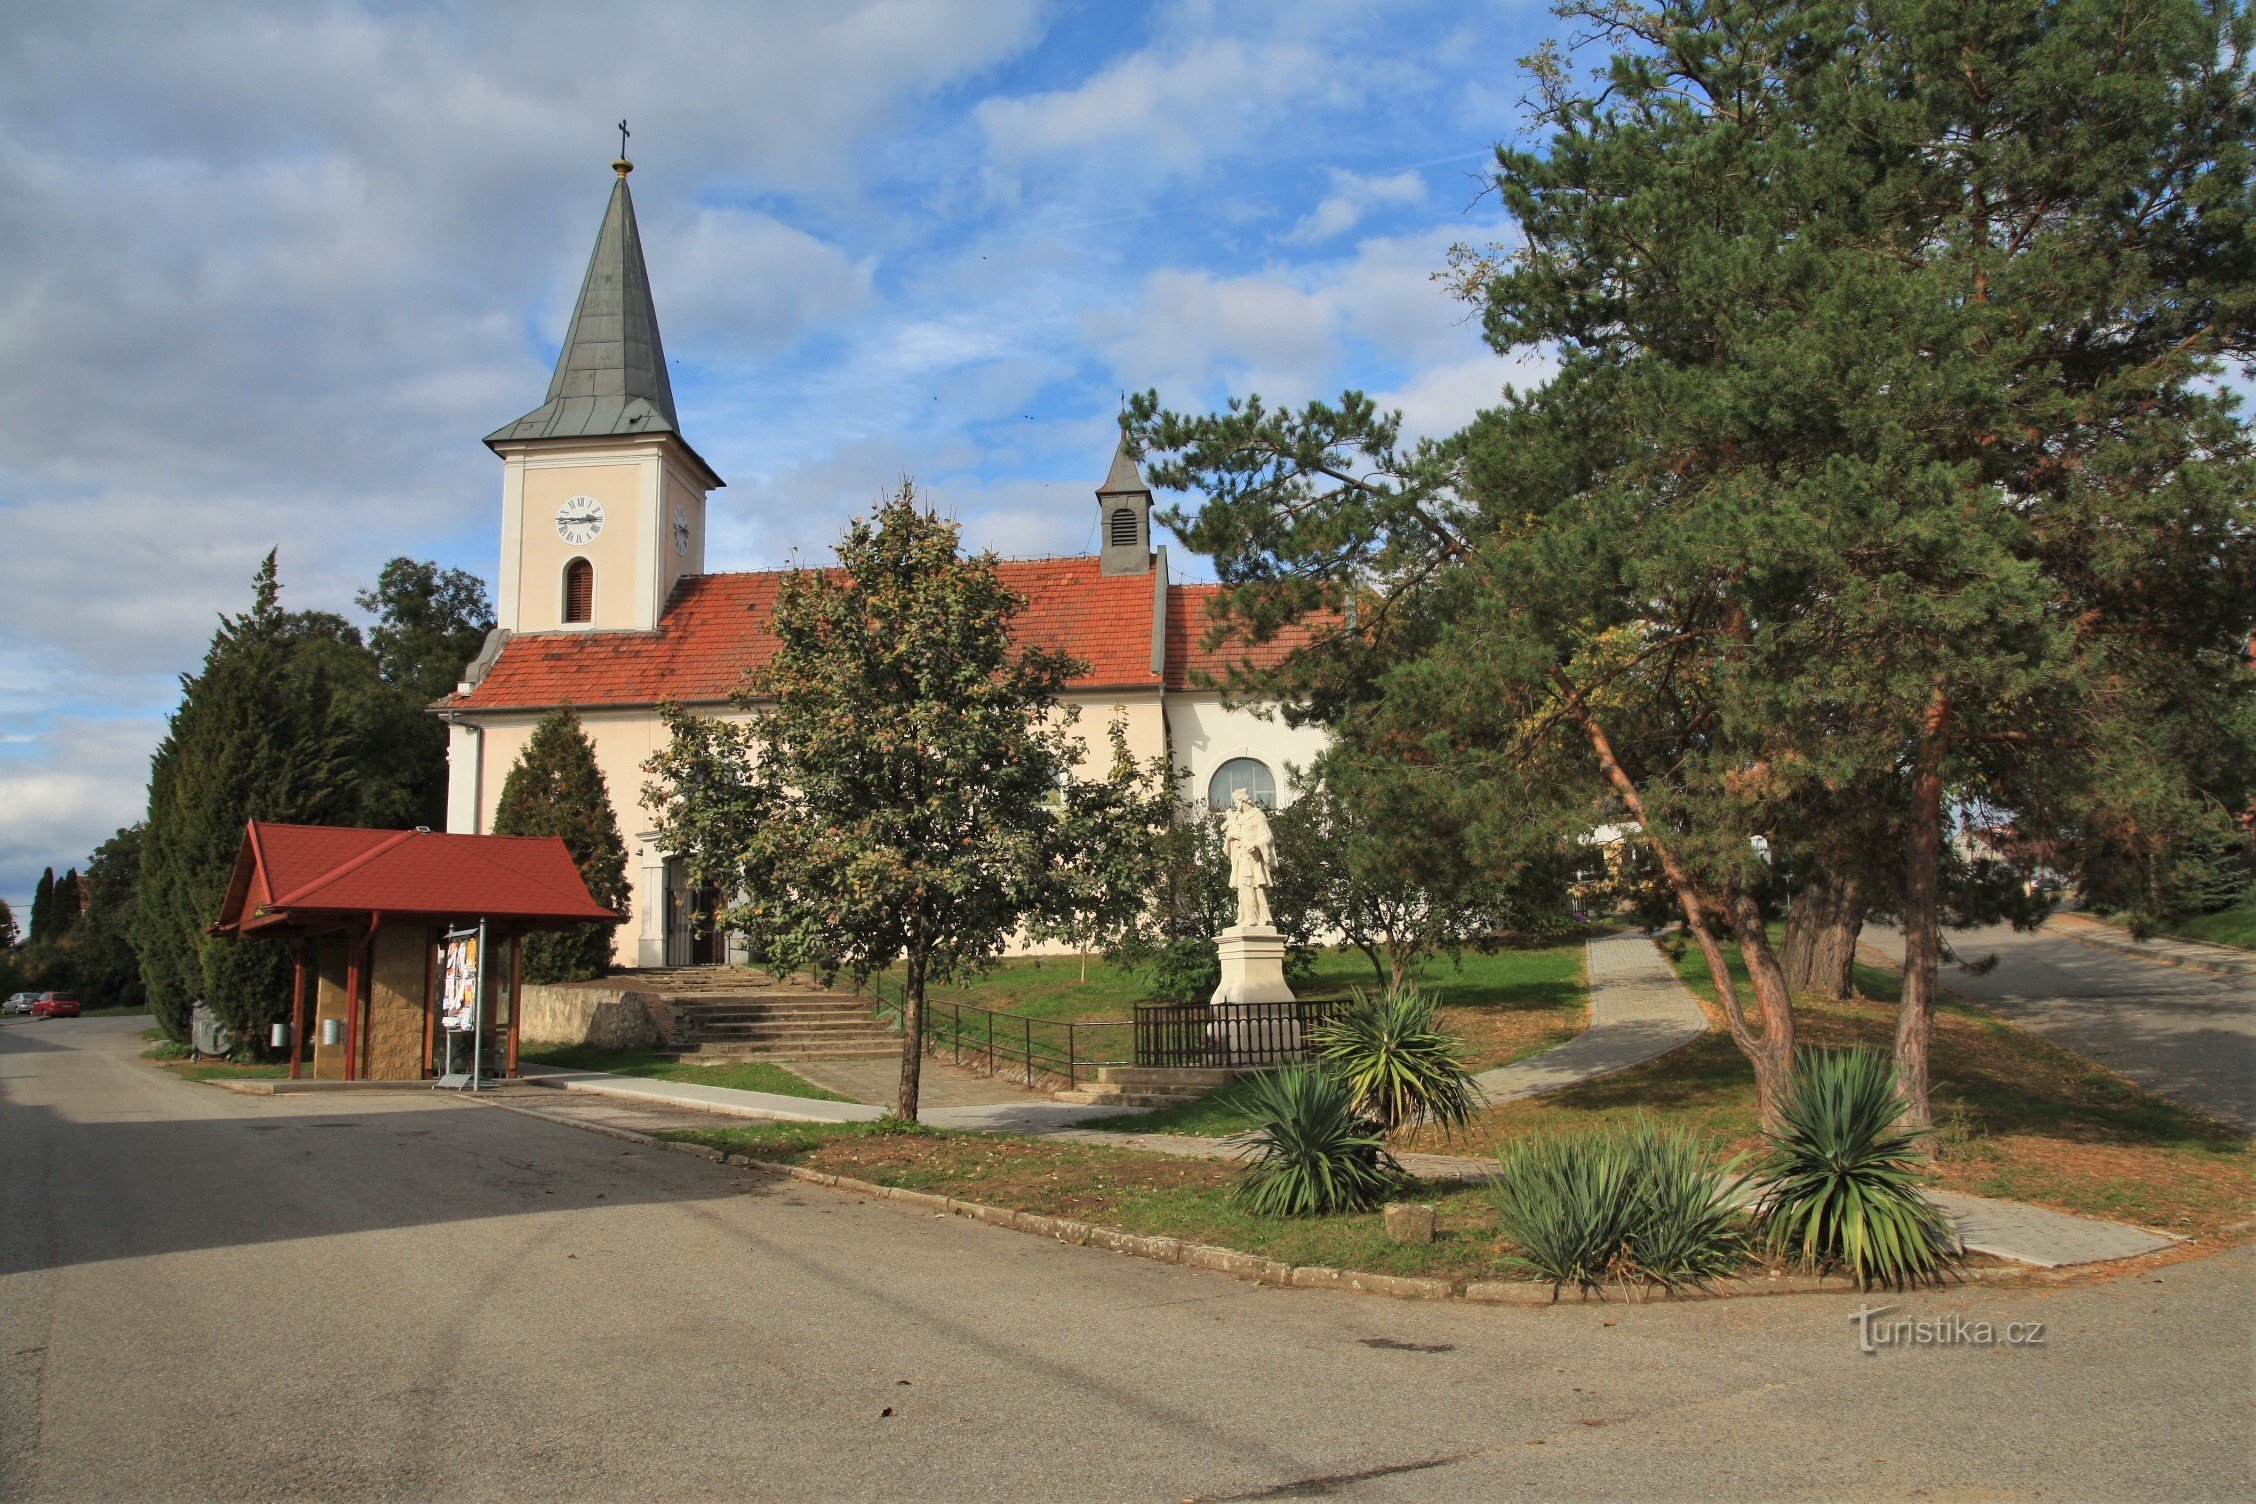 Pribicin kylää hallitsee Pyhän Nikolauksen kirkko. Johannes Kastaja